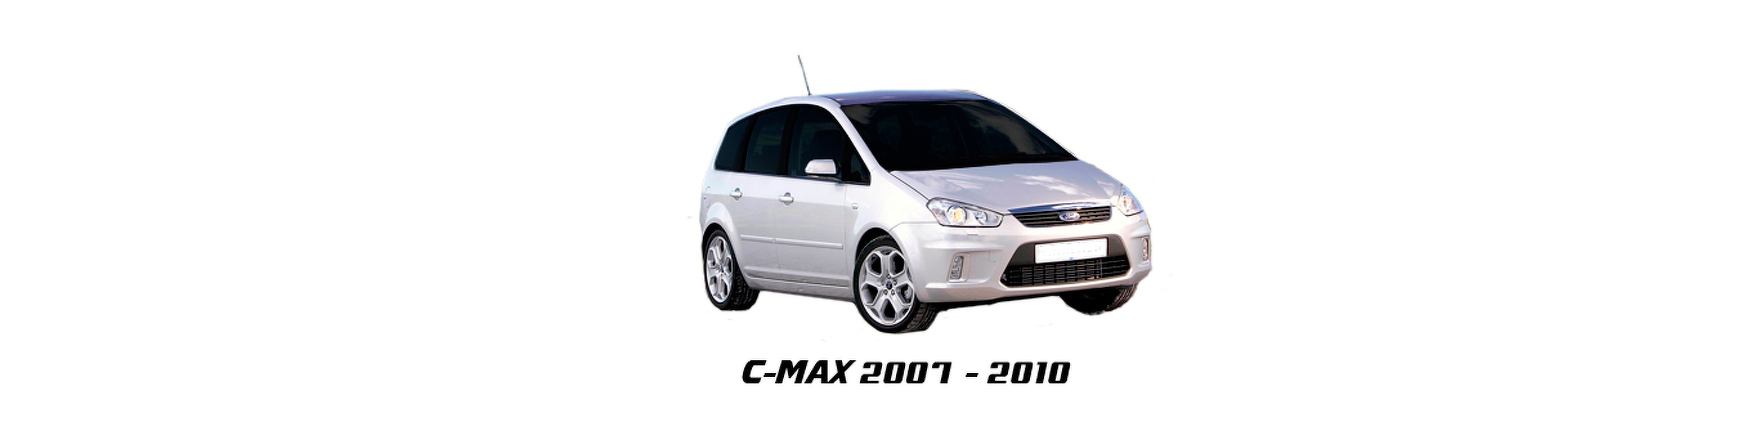 Recambios de Ford C-Max de 2007, 2008, 2009 y 2010.